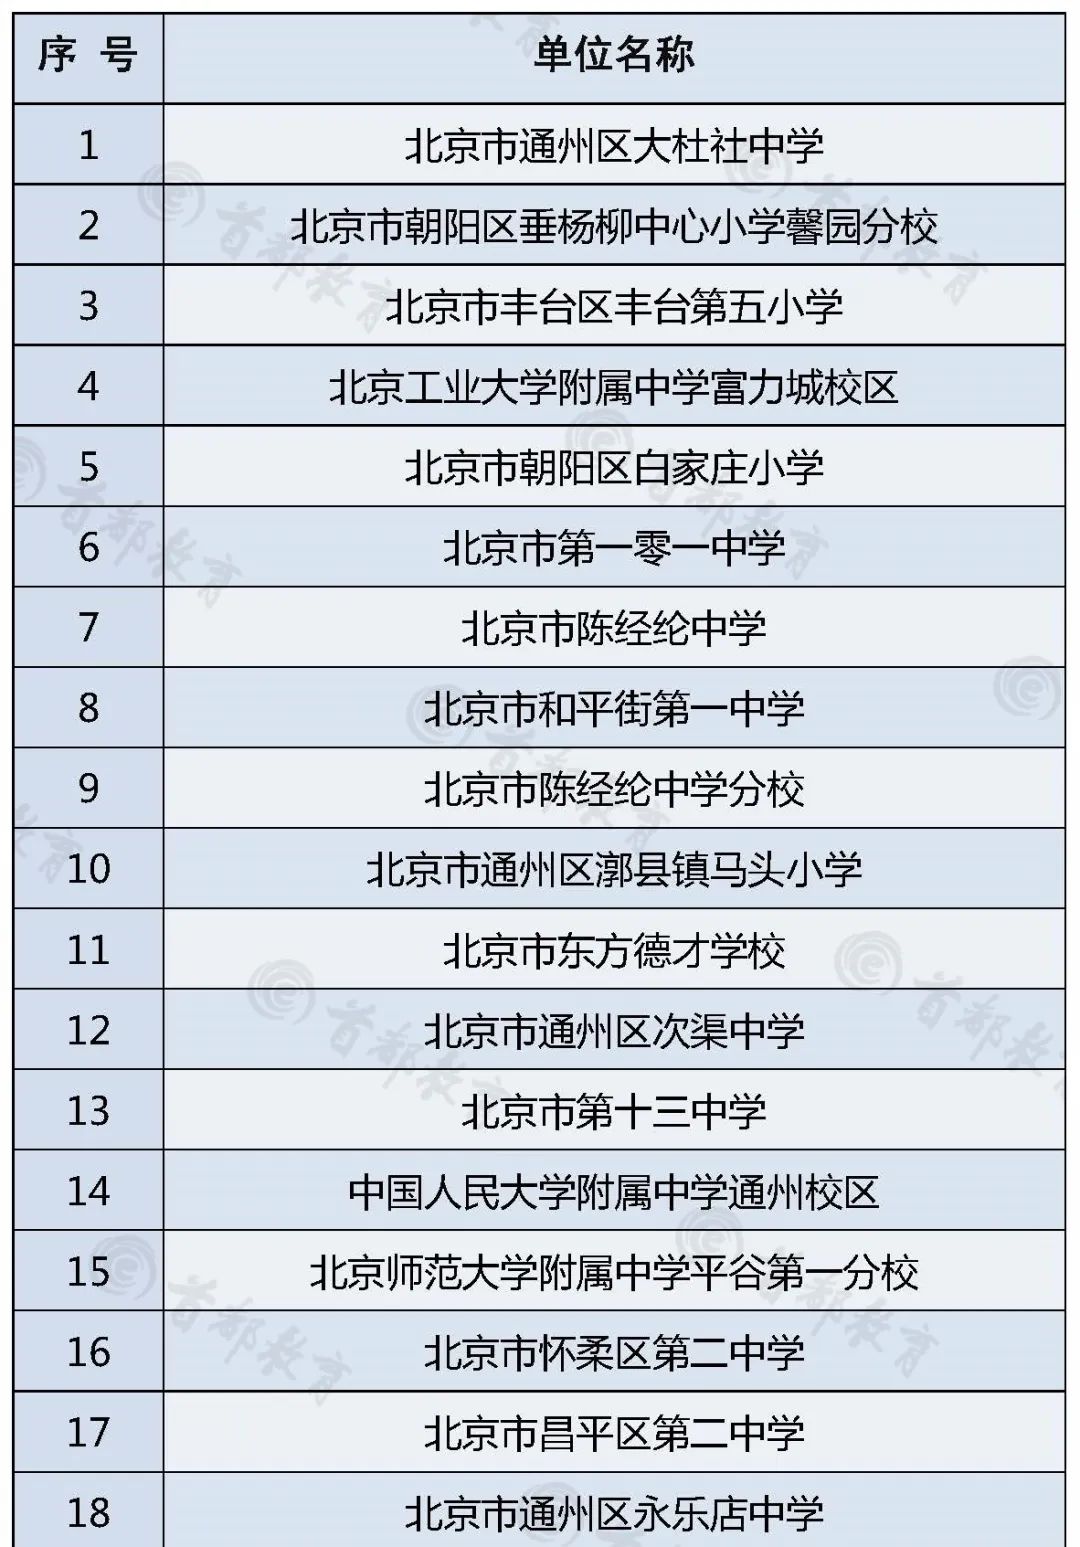 北京43所中小学校入选2020年度“全国青少年人工智能活动特色单位”